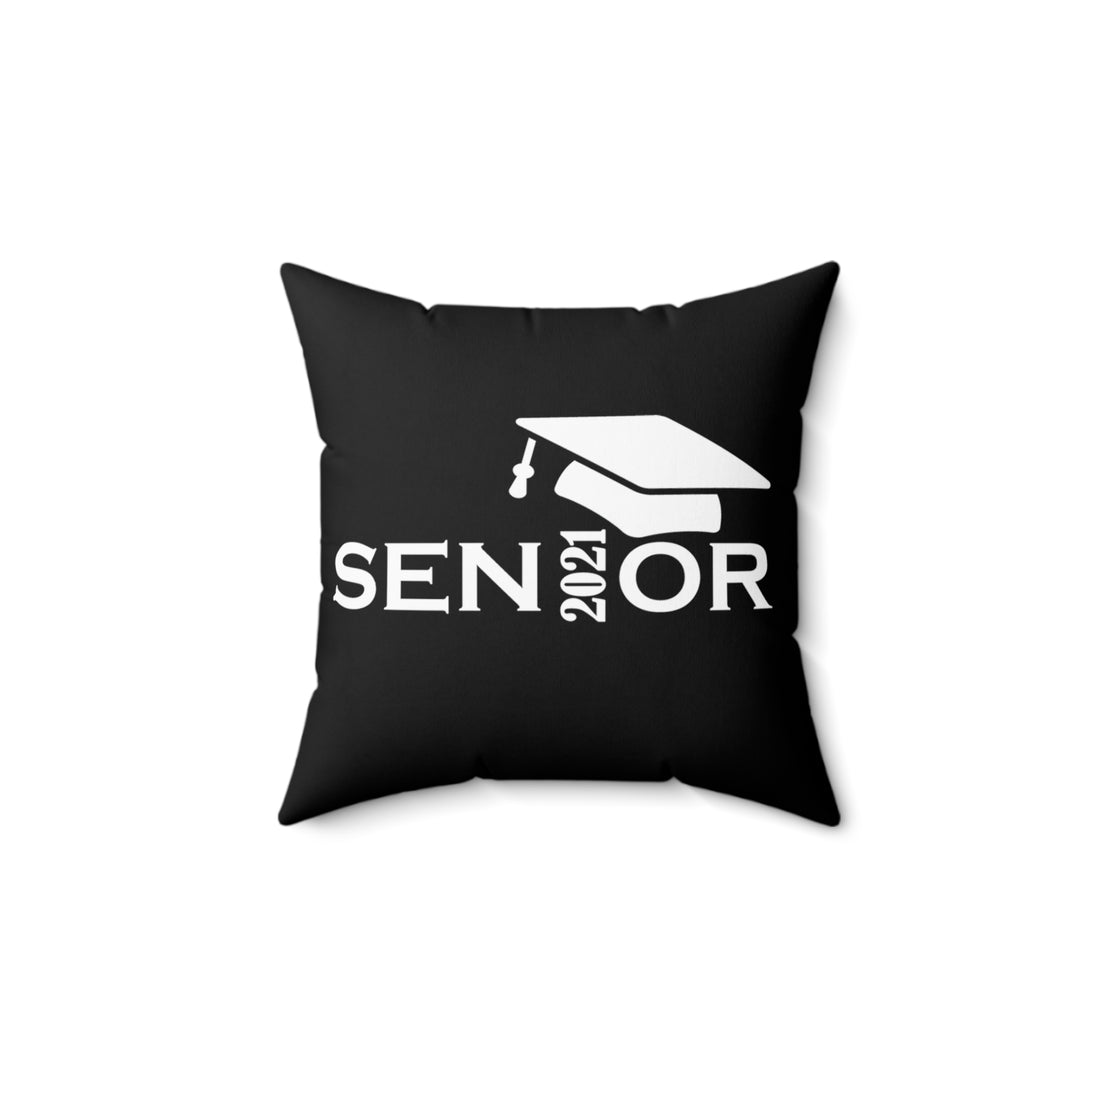 Senior Cap With Class Year Customizable - Black Pillow